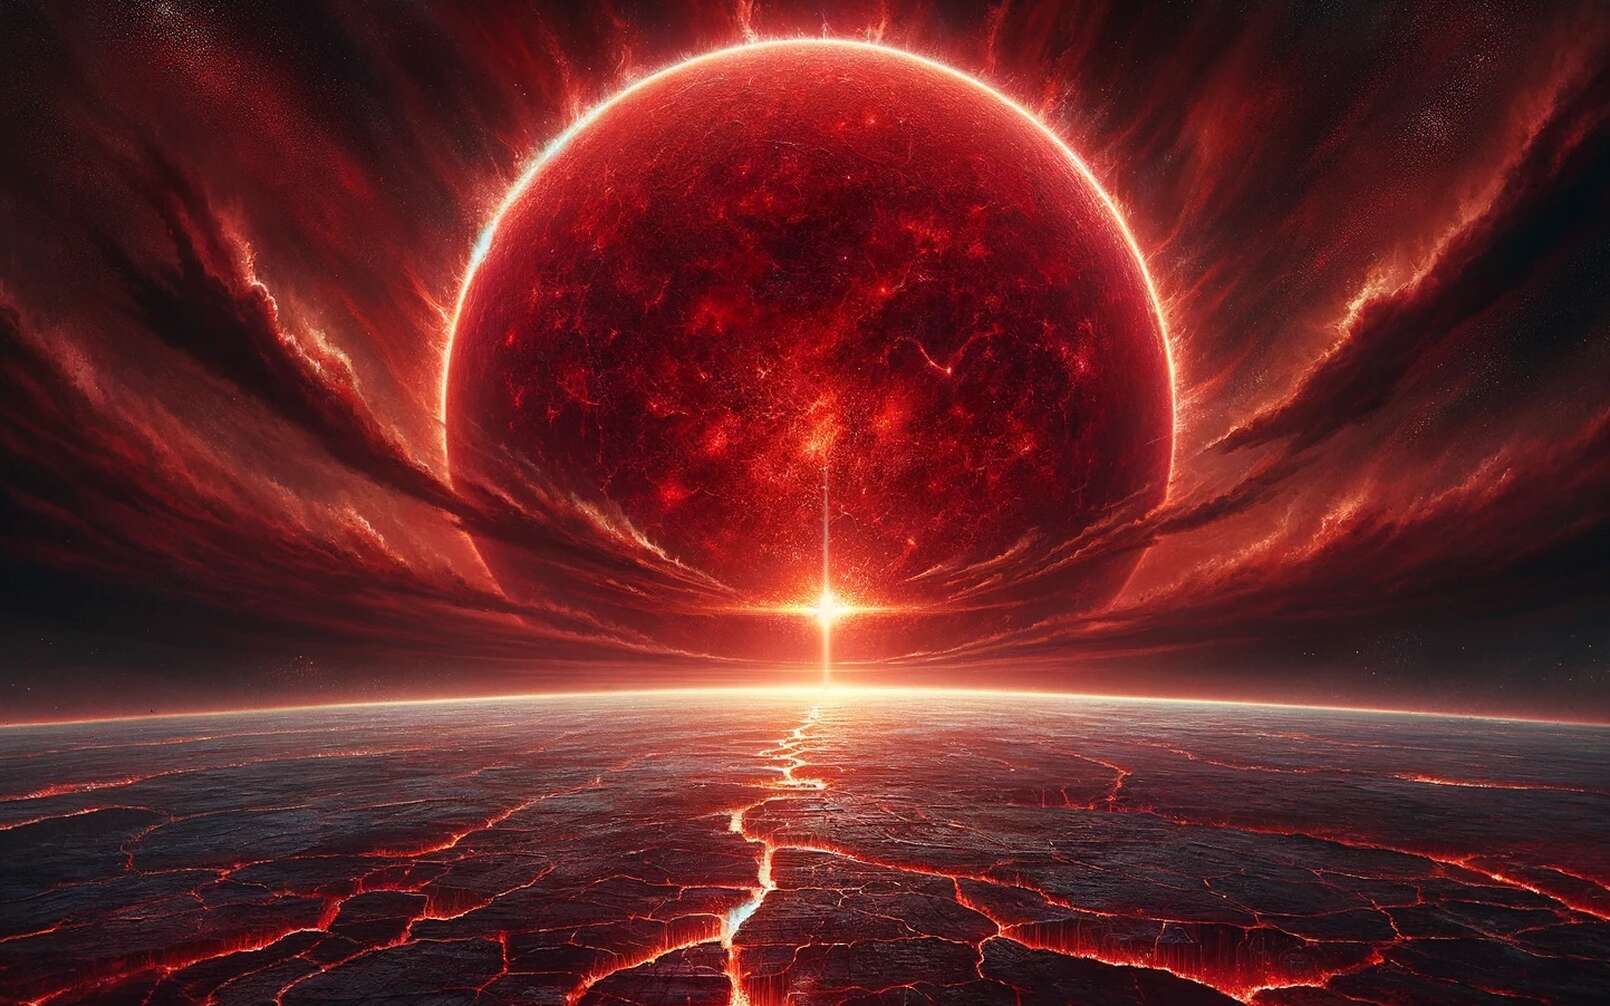 Les scénarios probables de fin du monde selon les astronomes